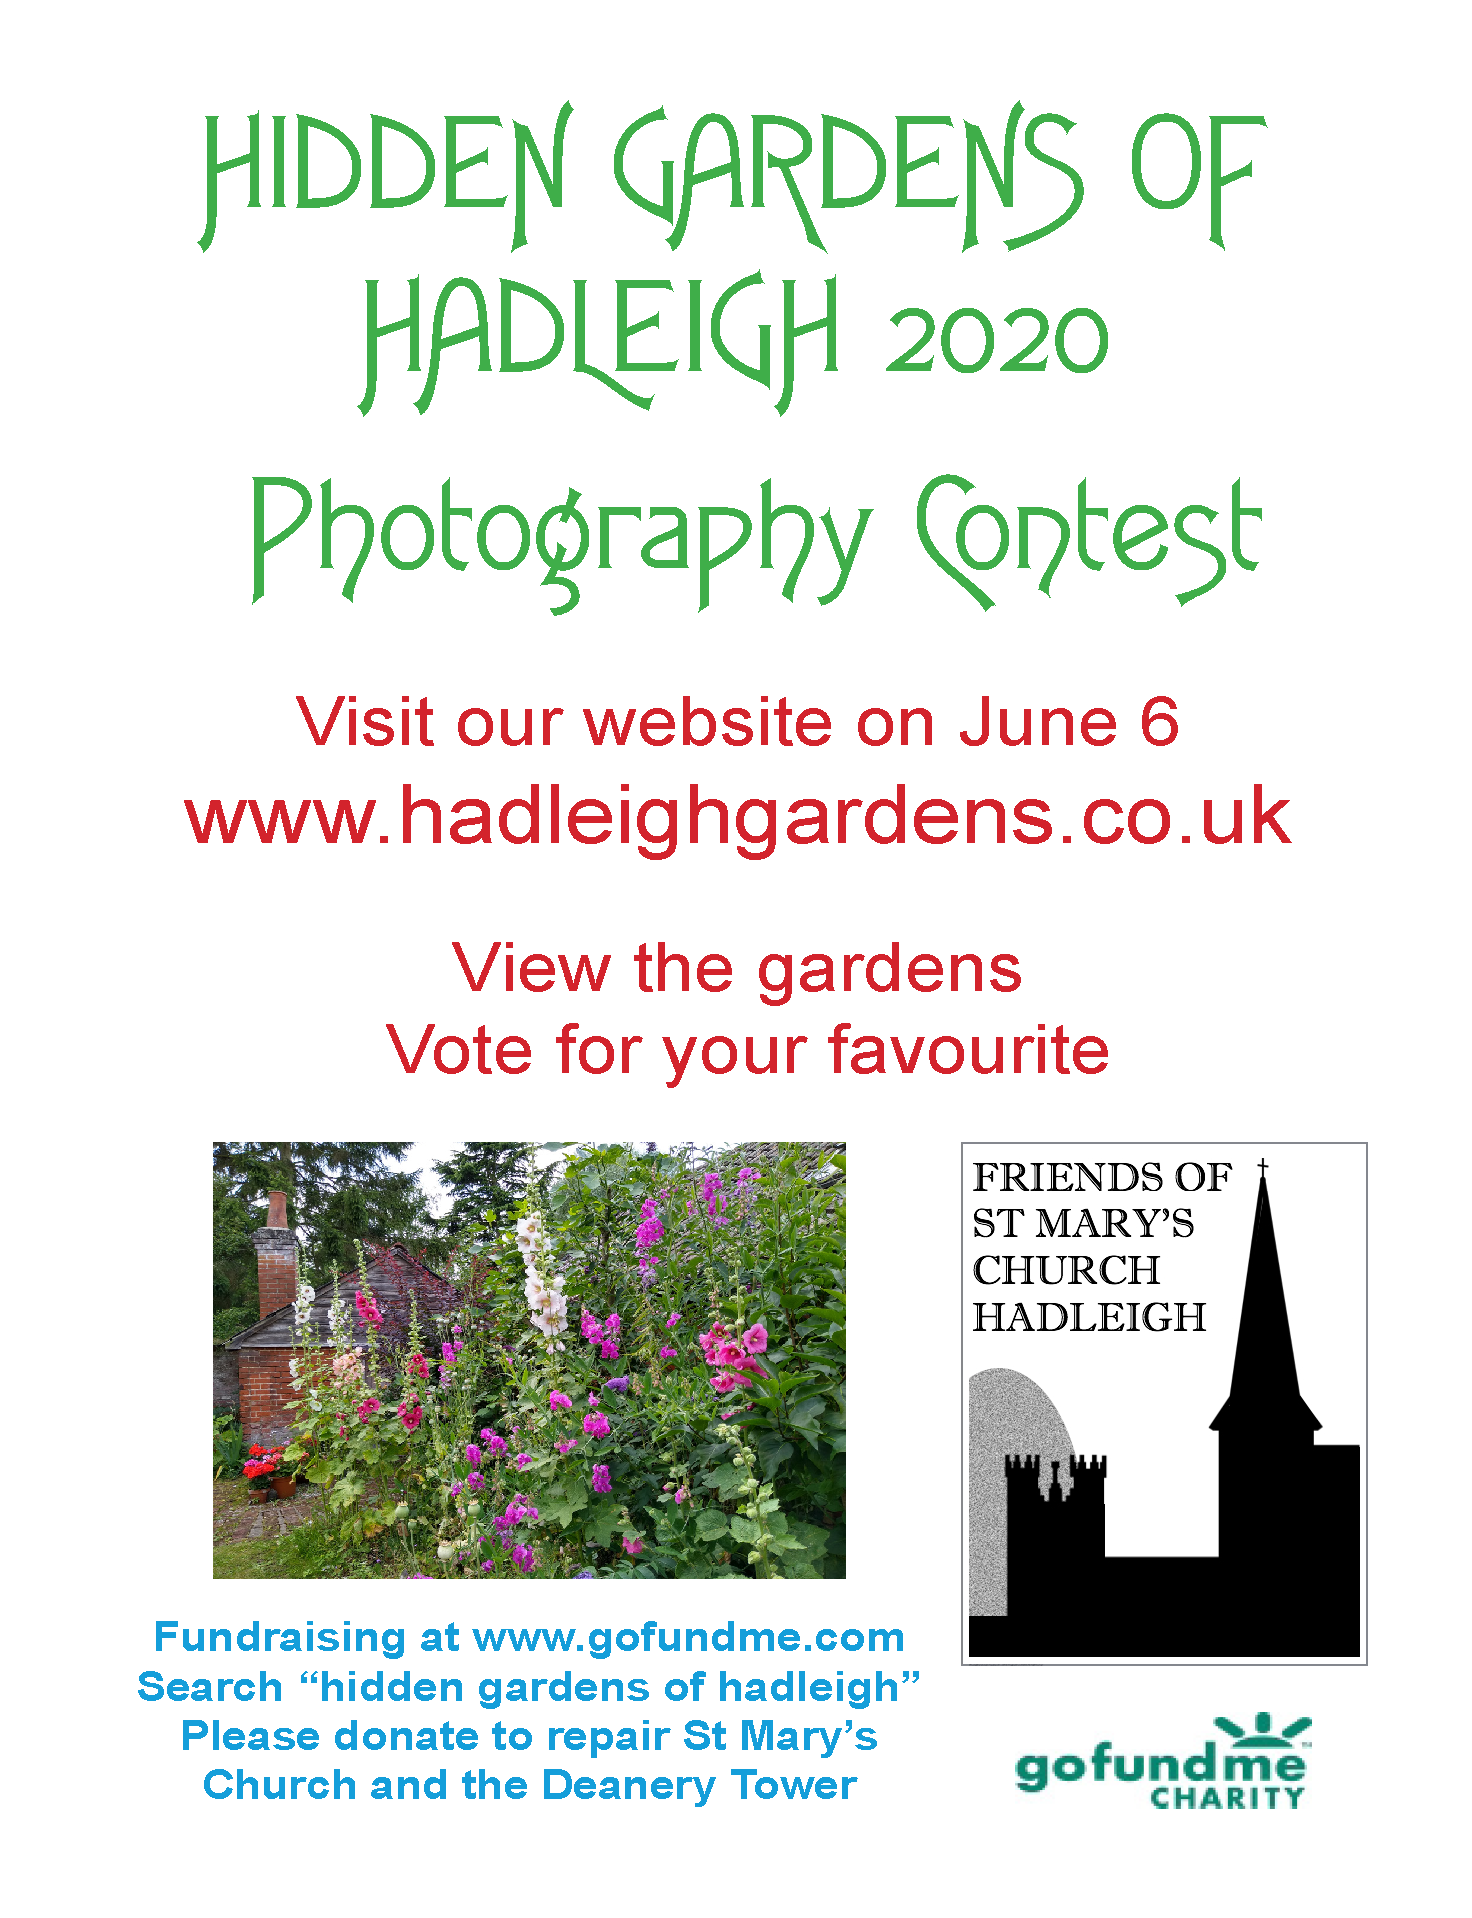 Hidden Gardens of Hadleigh 2020 photography contest